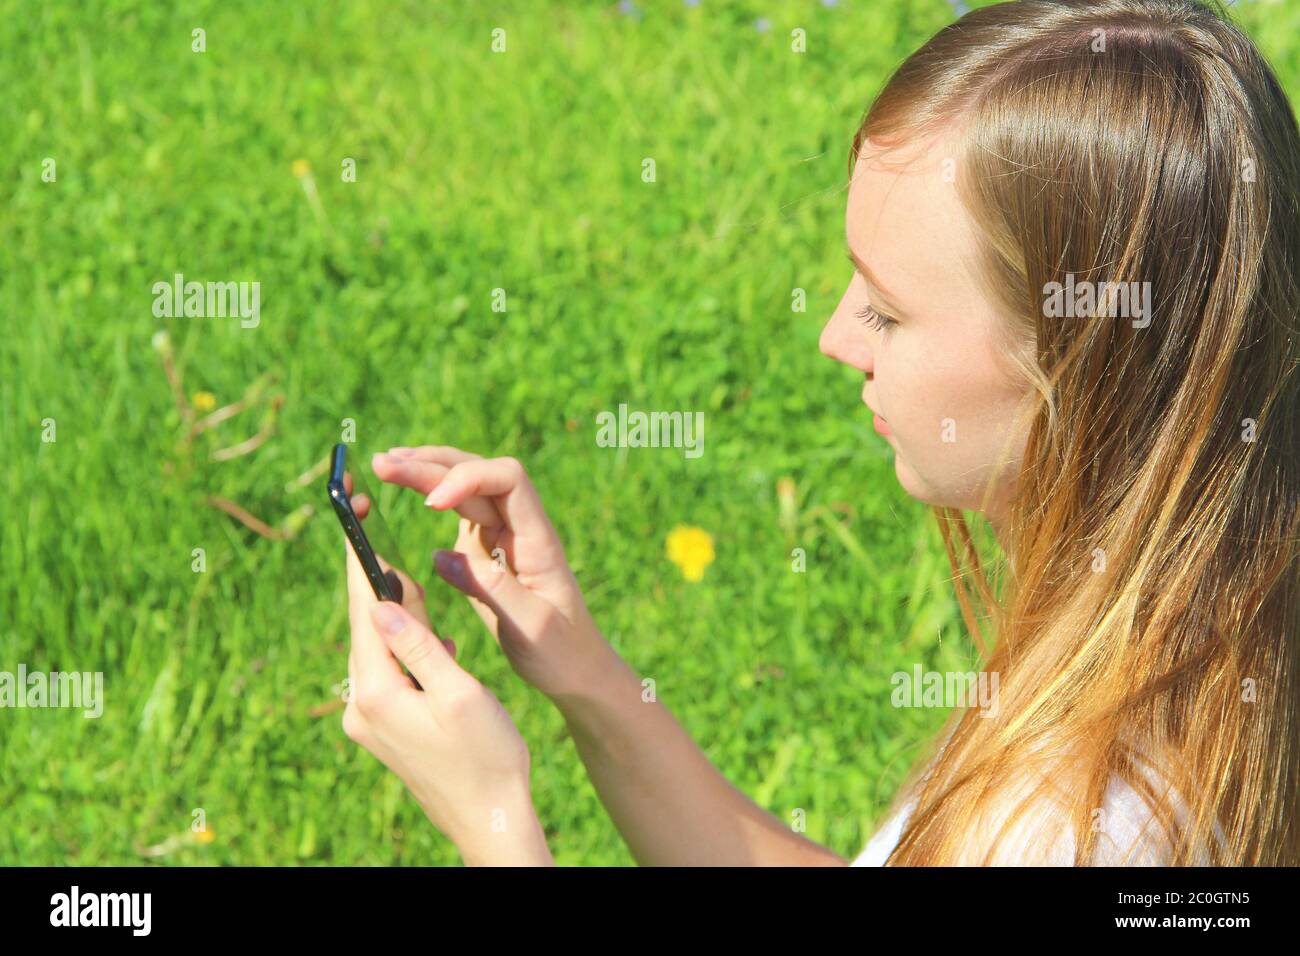 Una giovane bella ragazza di aspetto europeo in una T-shirt bianca con lunghi capelli biondi si siede su erba verde, sul prato con un cellulare in mano, si ribalta attraverso i social network, lavora nel telefono. Foto Stock